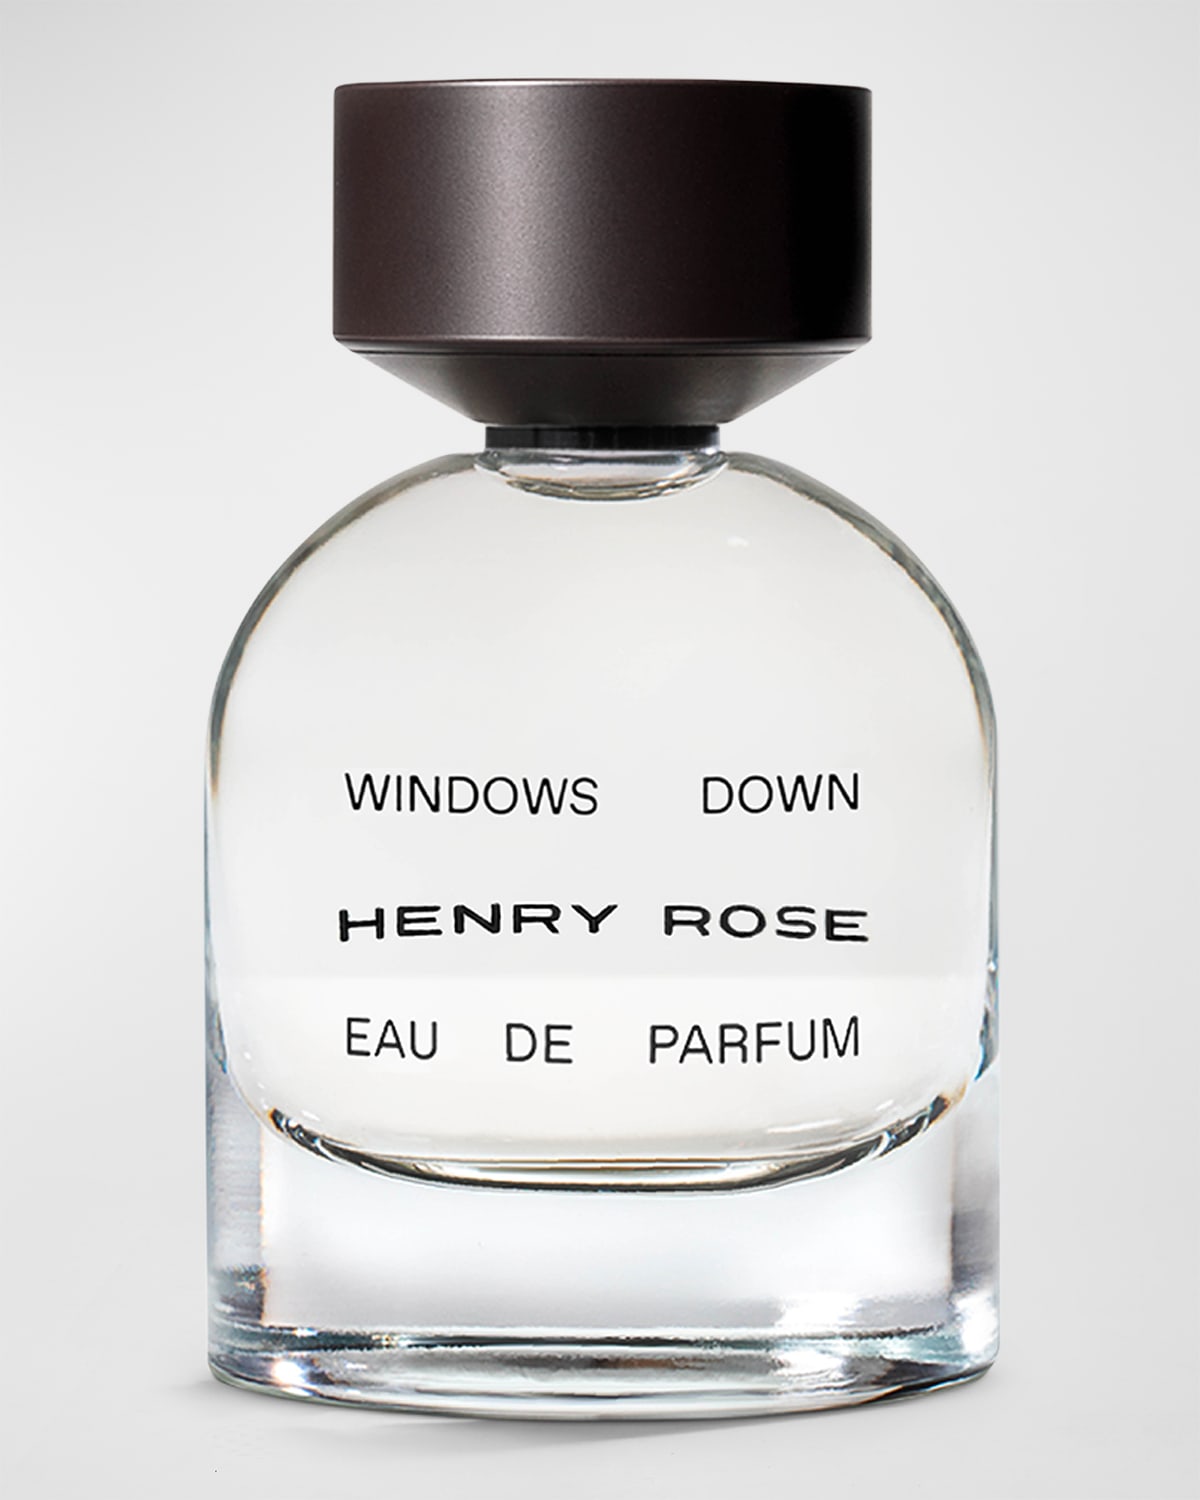 HENRY ROSE Windows Down Eau de Parfum, 1.7 oz.